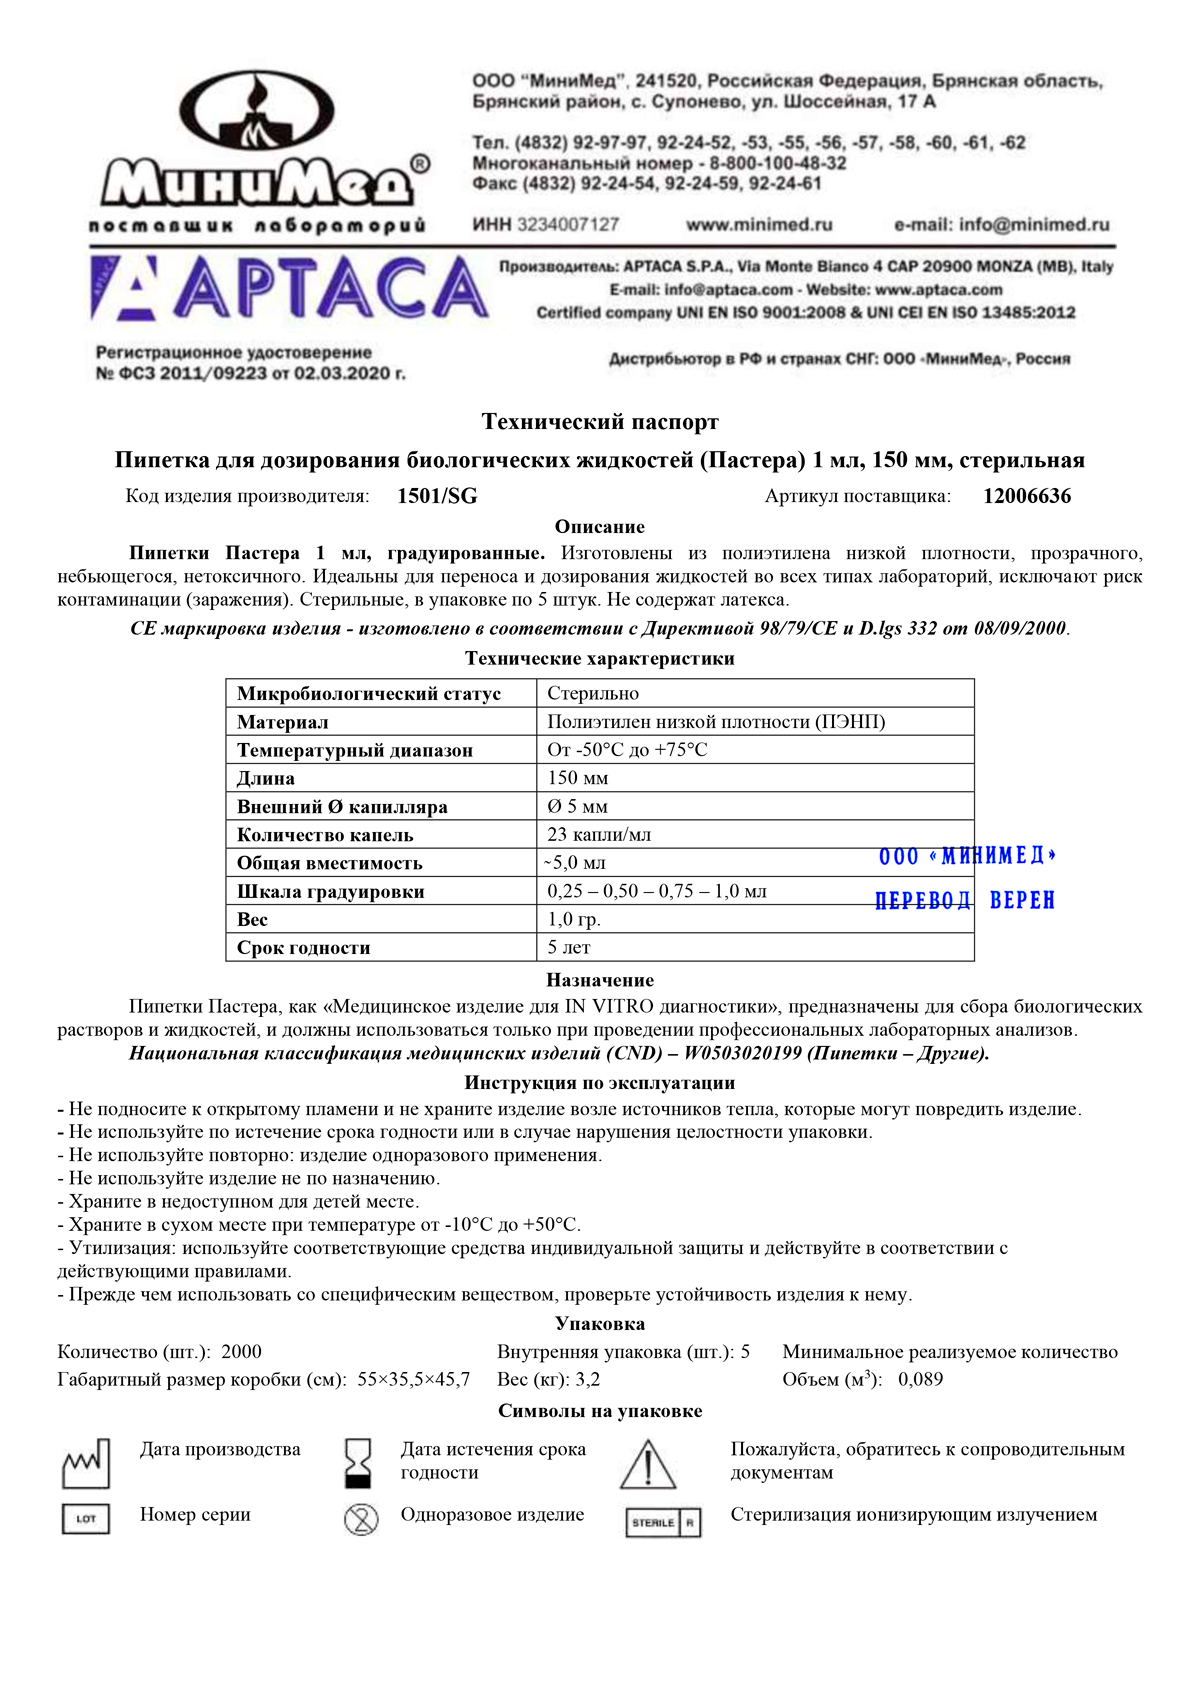 Пипетка-для-дозирования-биологических-жидкостей-(Пастера)-1-мл.,-стер.,-Aptaca-1